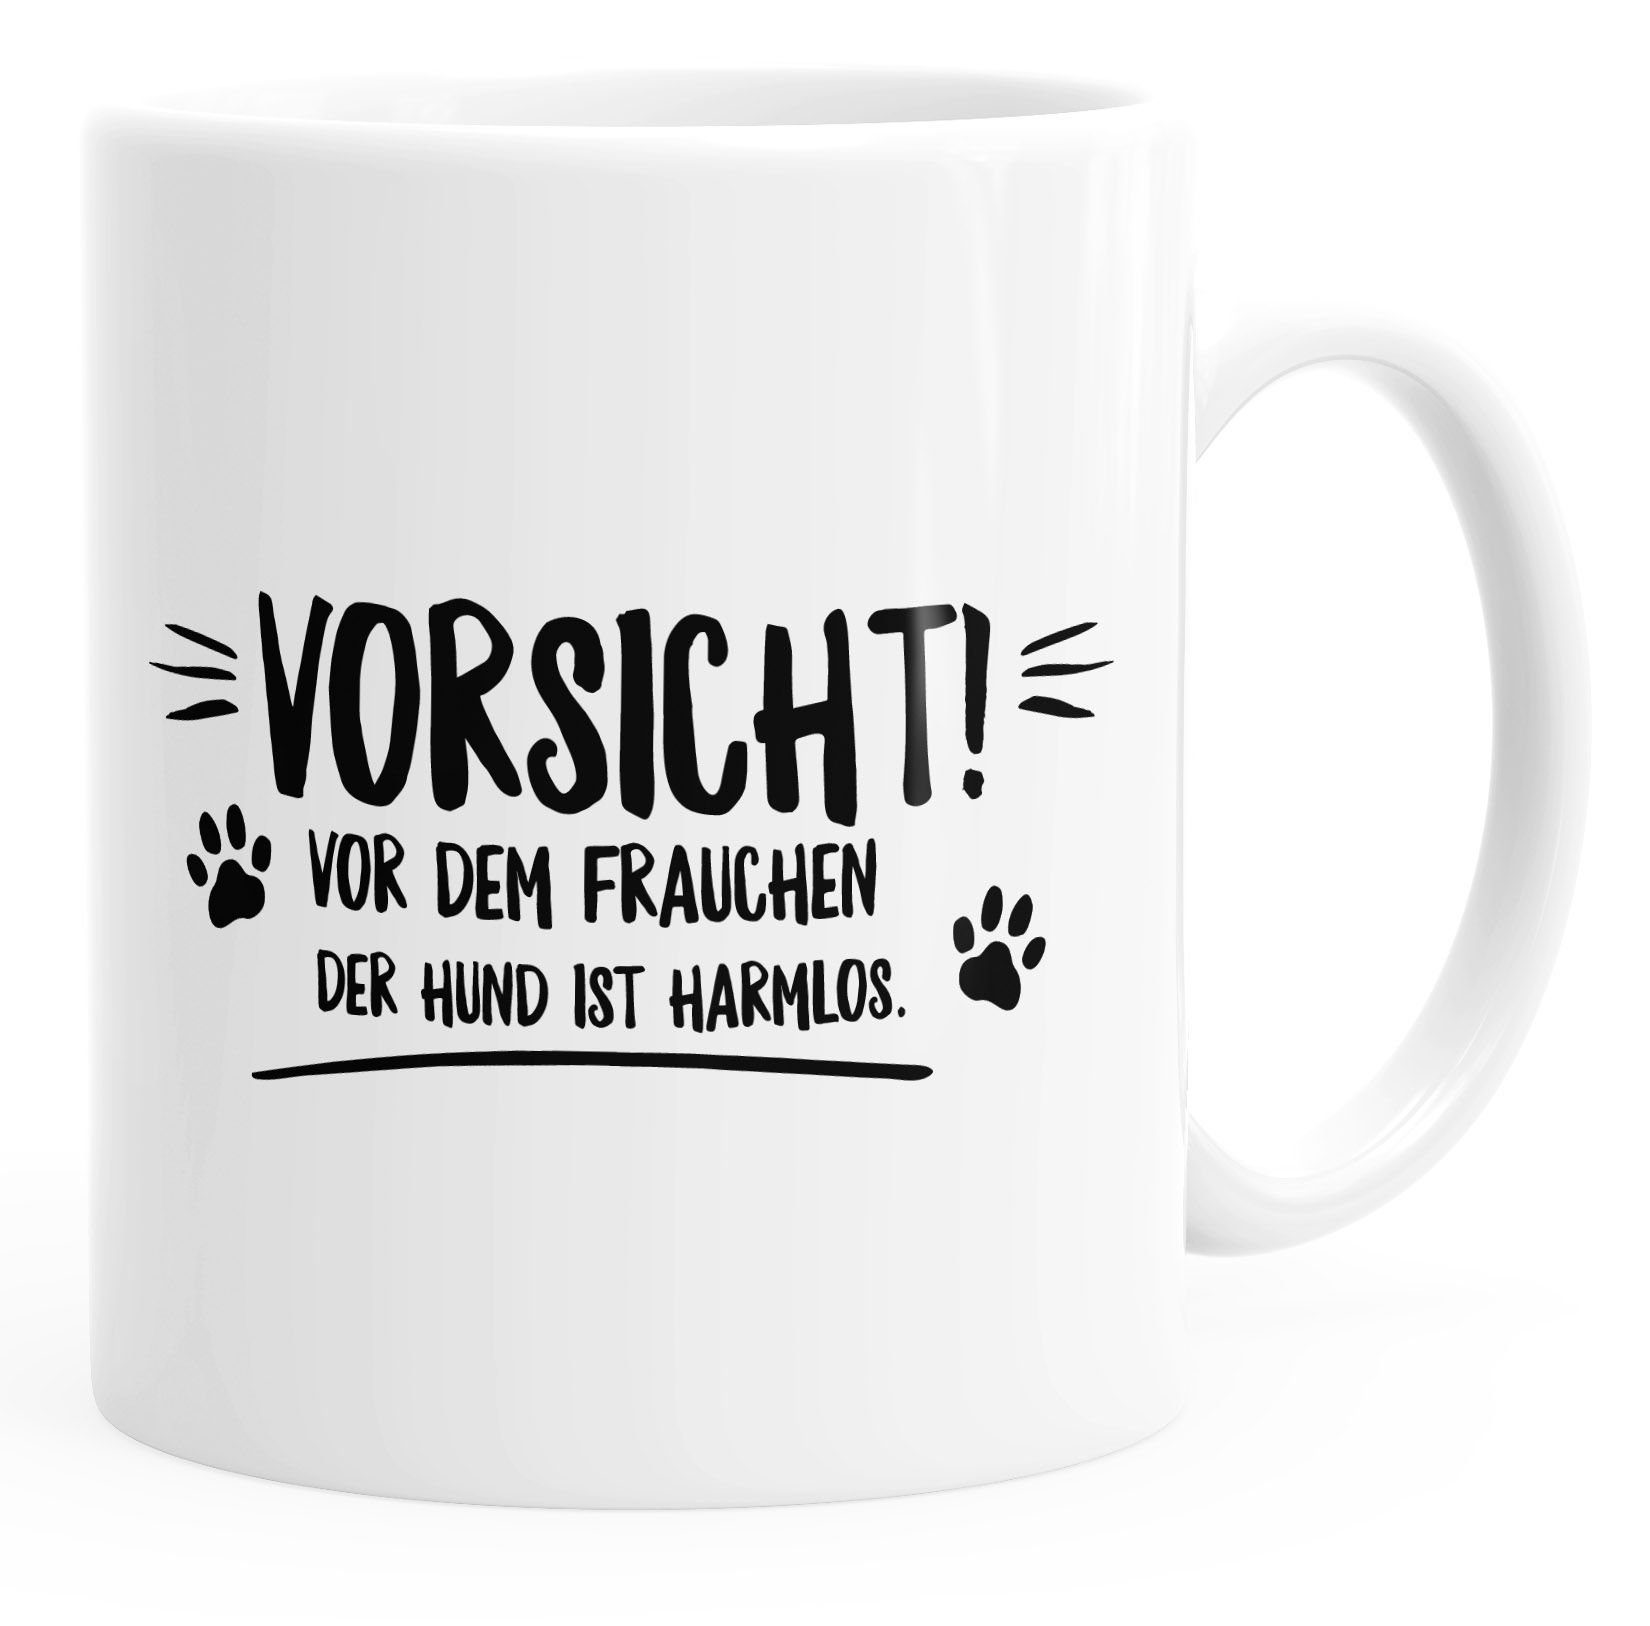 Spruch mit harmlos! glänzend MoonWorks der Tasse dem Vorsicht Keramik MoonWorks®, vor Frauchen Hund ist Kaffee-Tasse